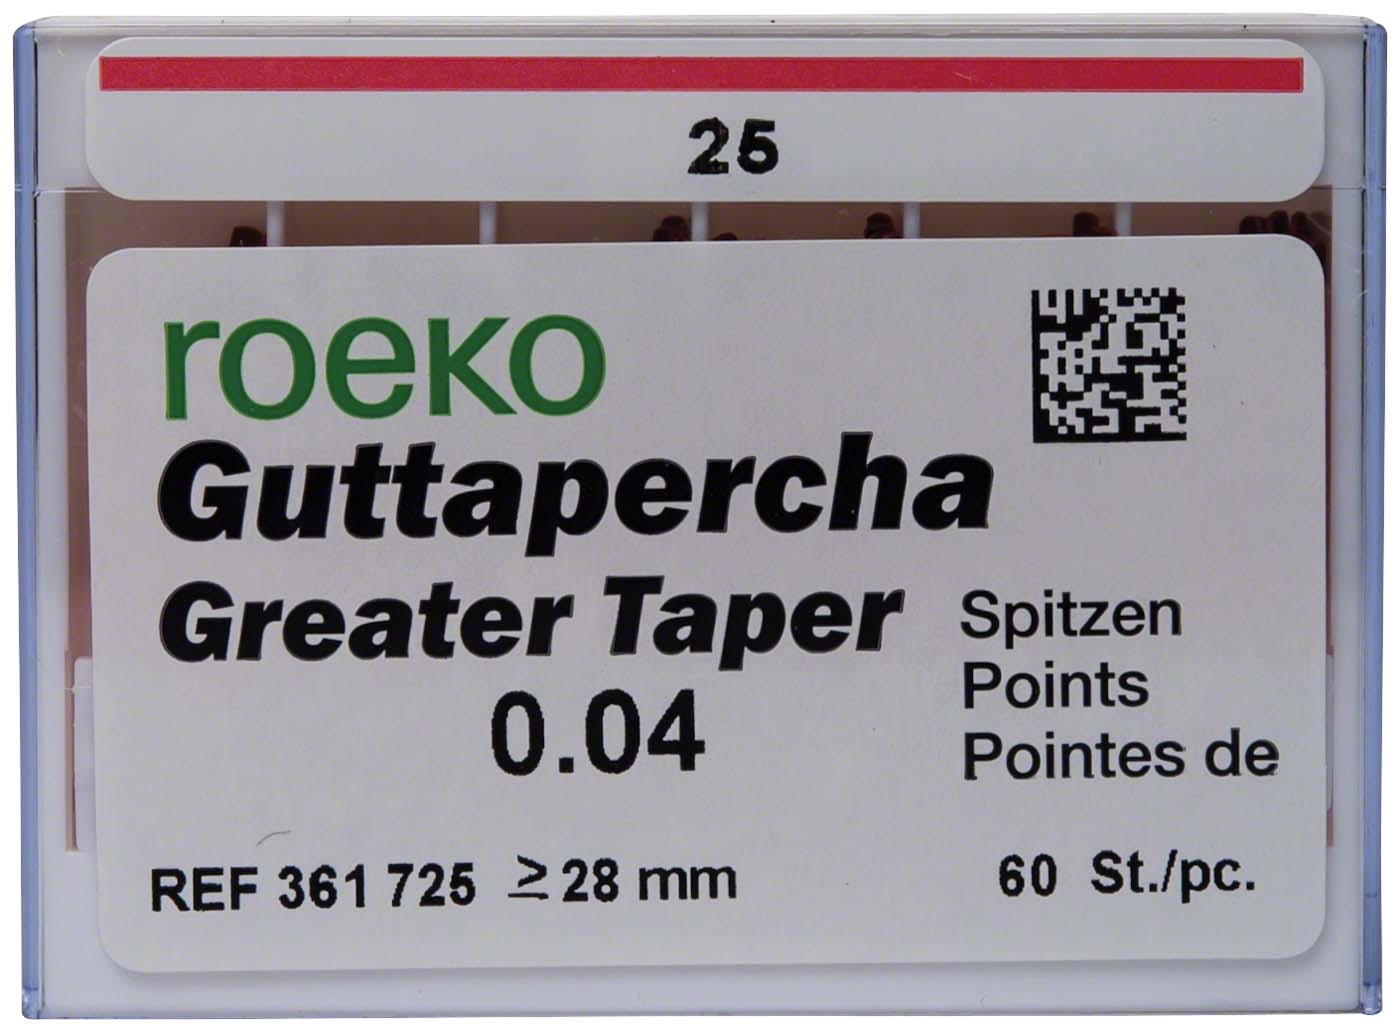 Guttapercha Greater Taper COLTENE